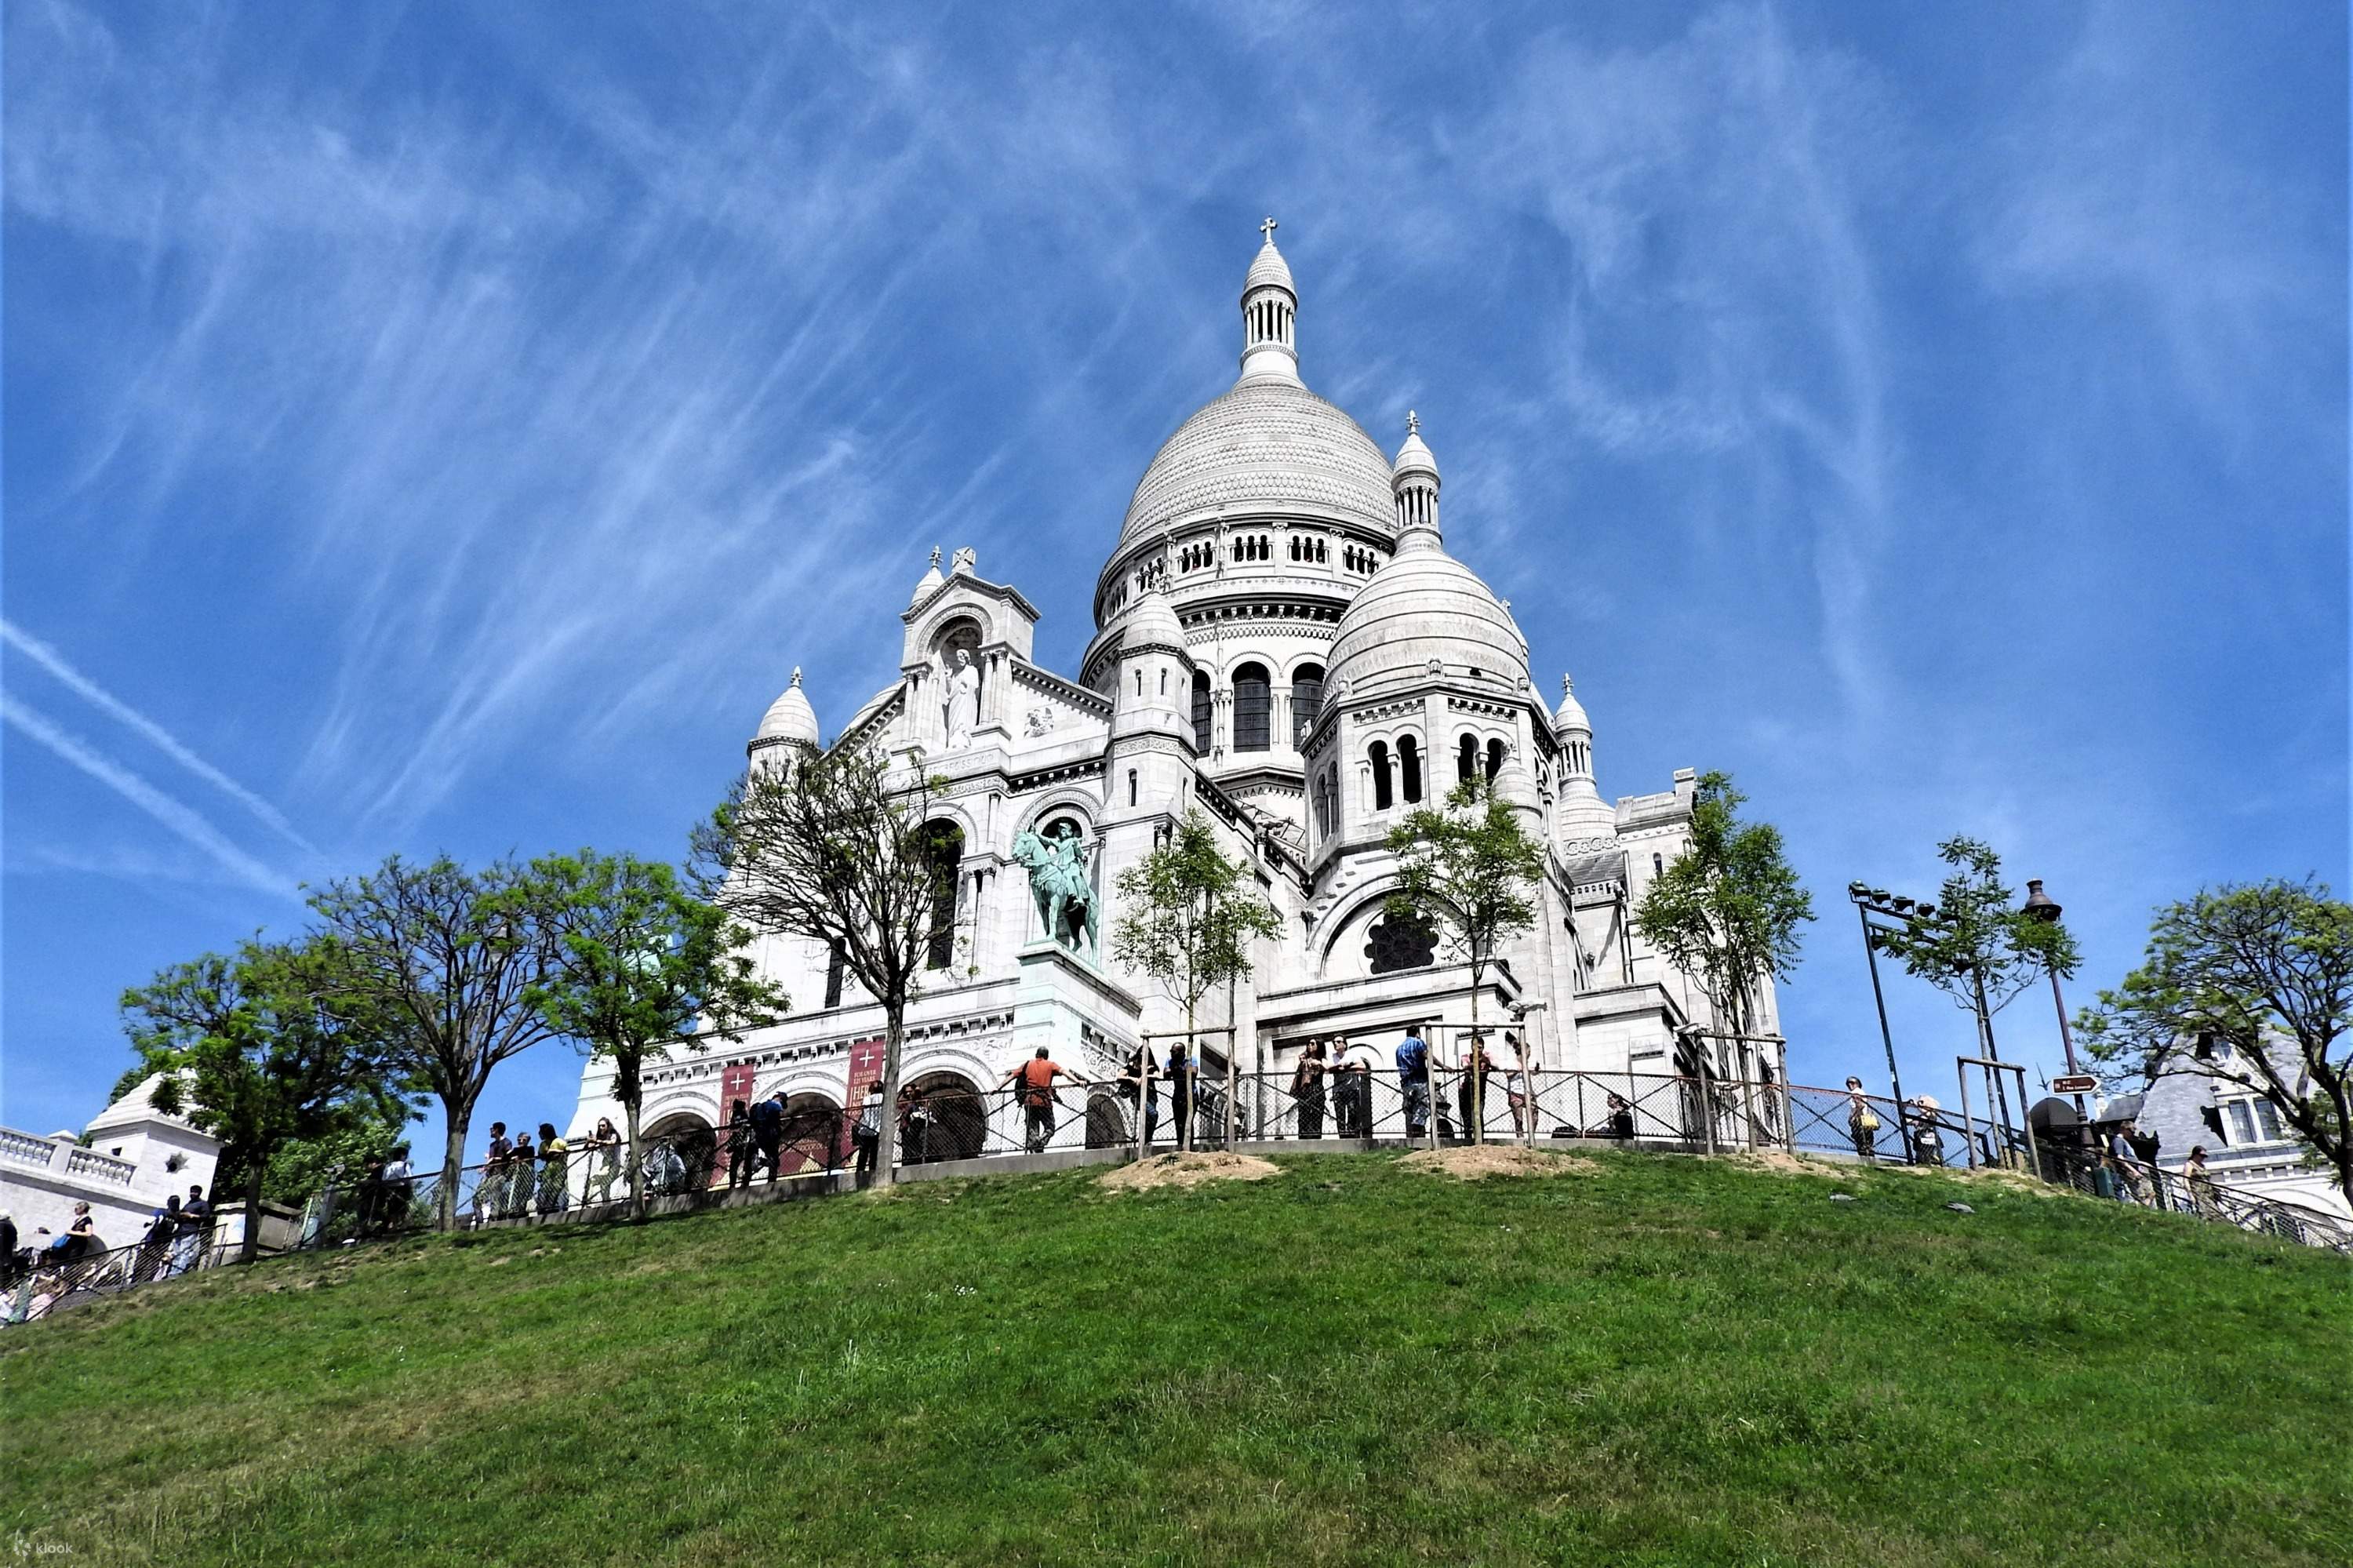 1 時間 パリのサクレ クール ドゥ モンマルトル大聖堂の入場 (ガイド付きツアー) | Klook